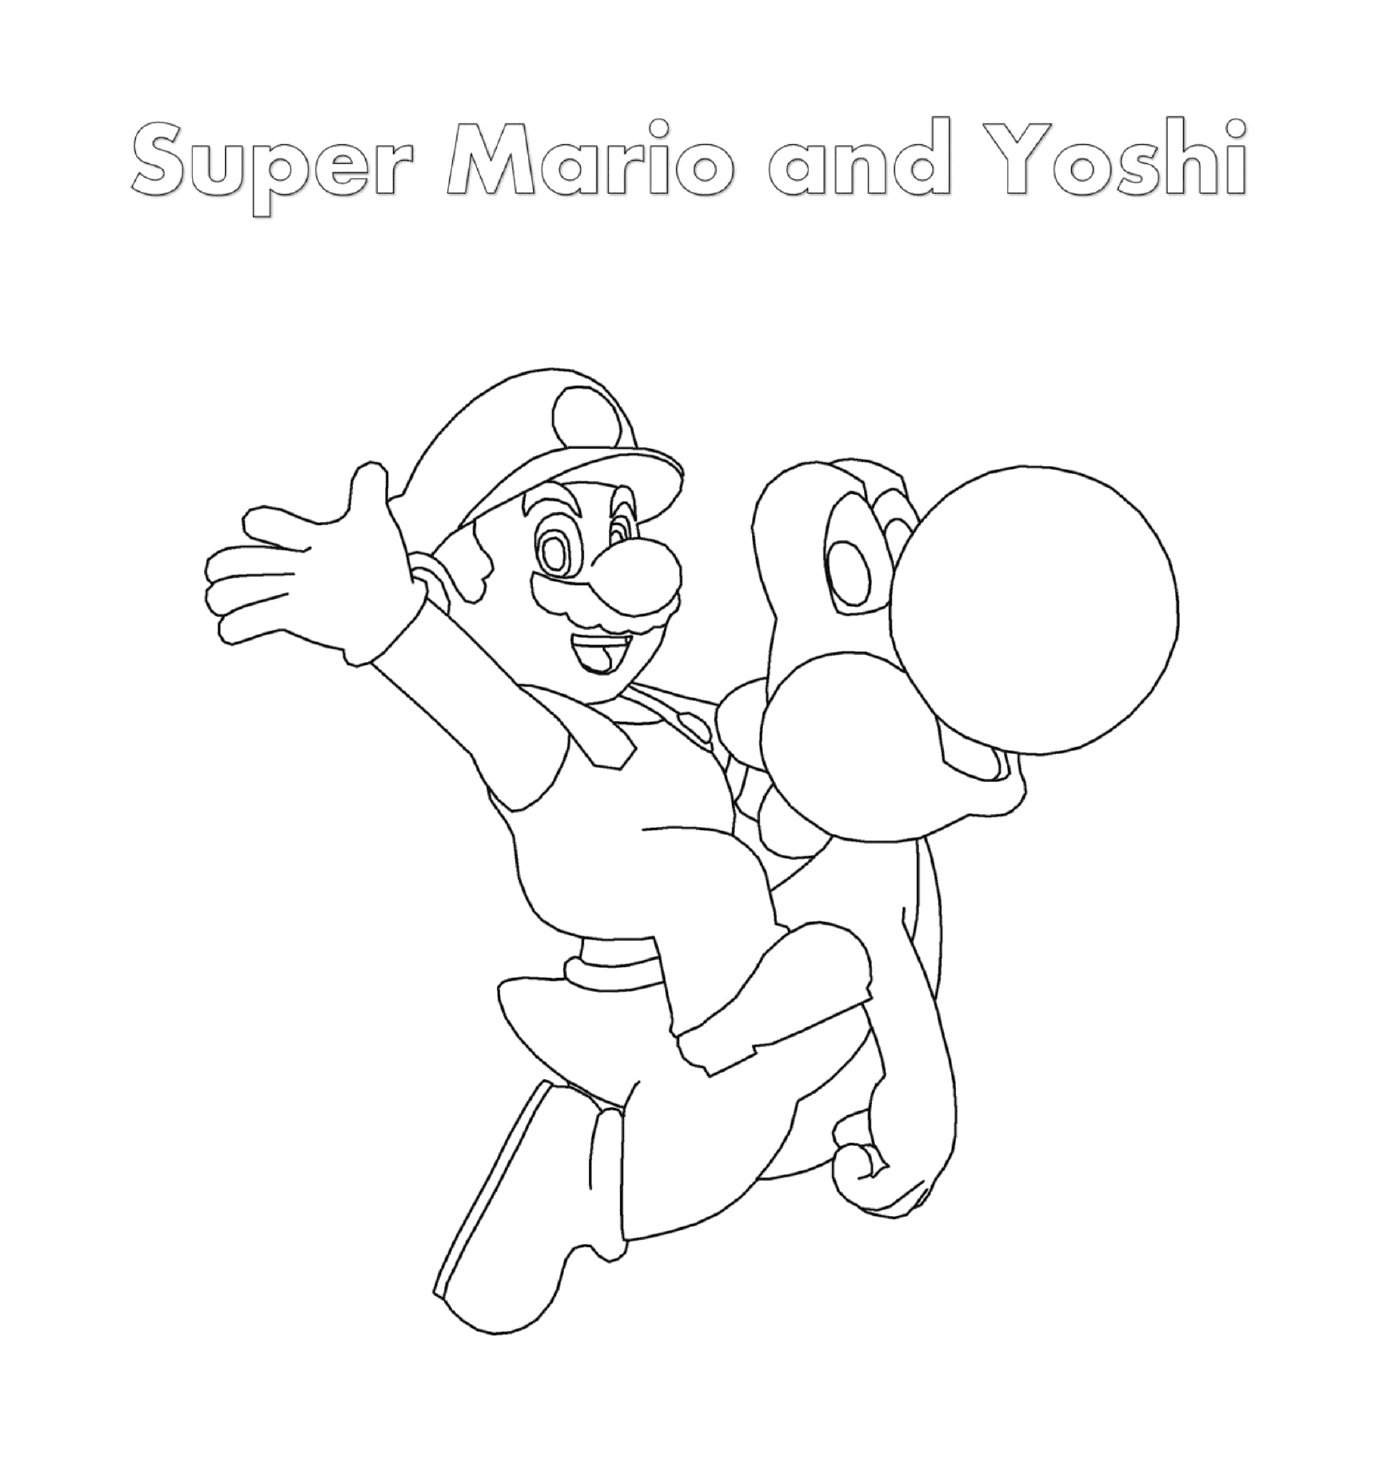  Супер Марио и Йоши с человеком, держащим пулю 